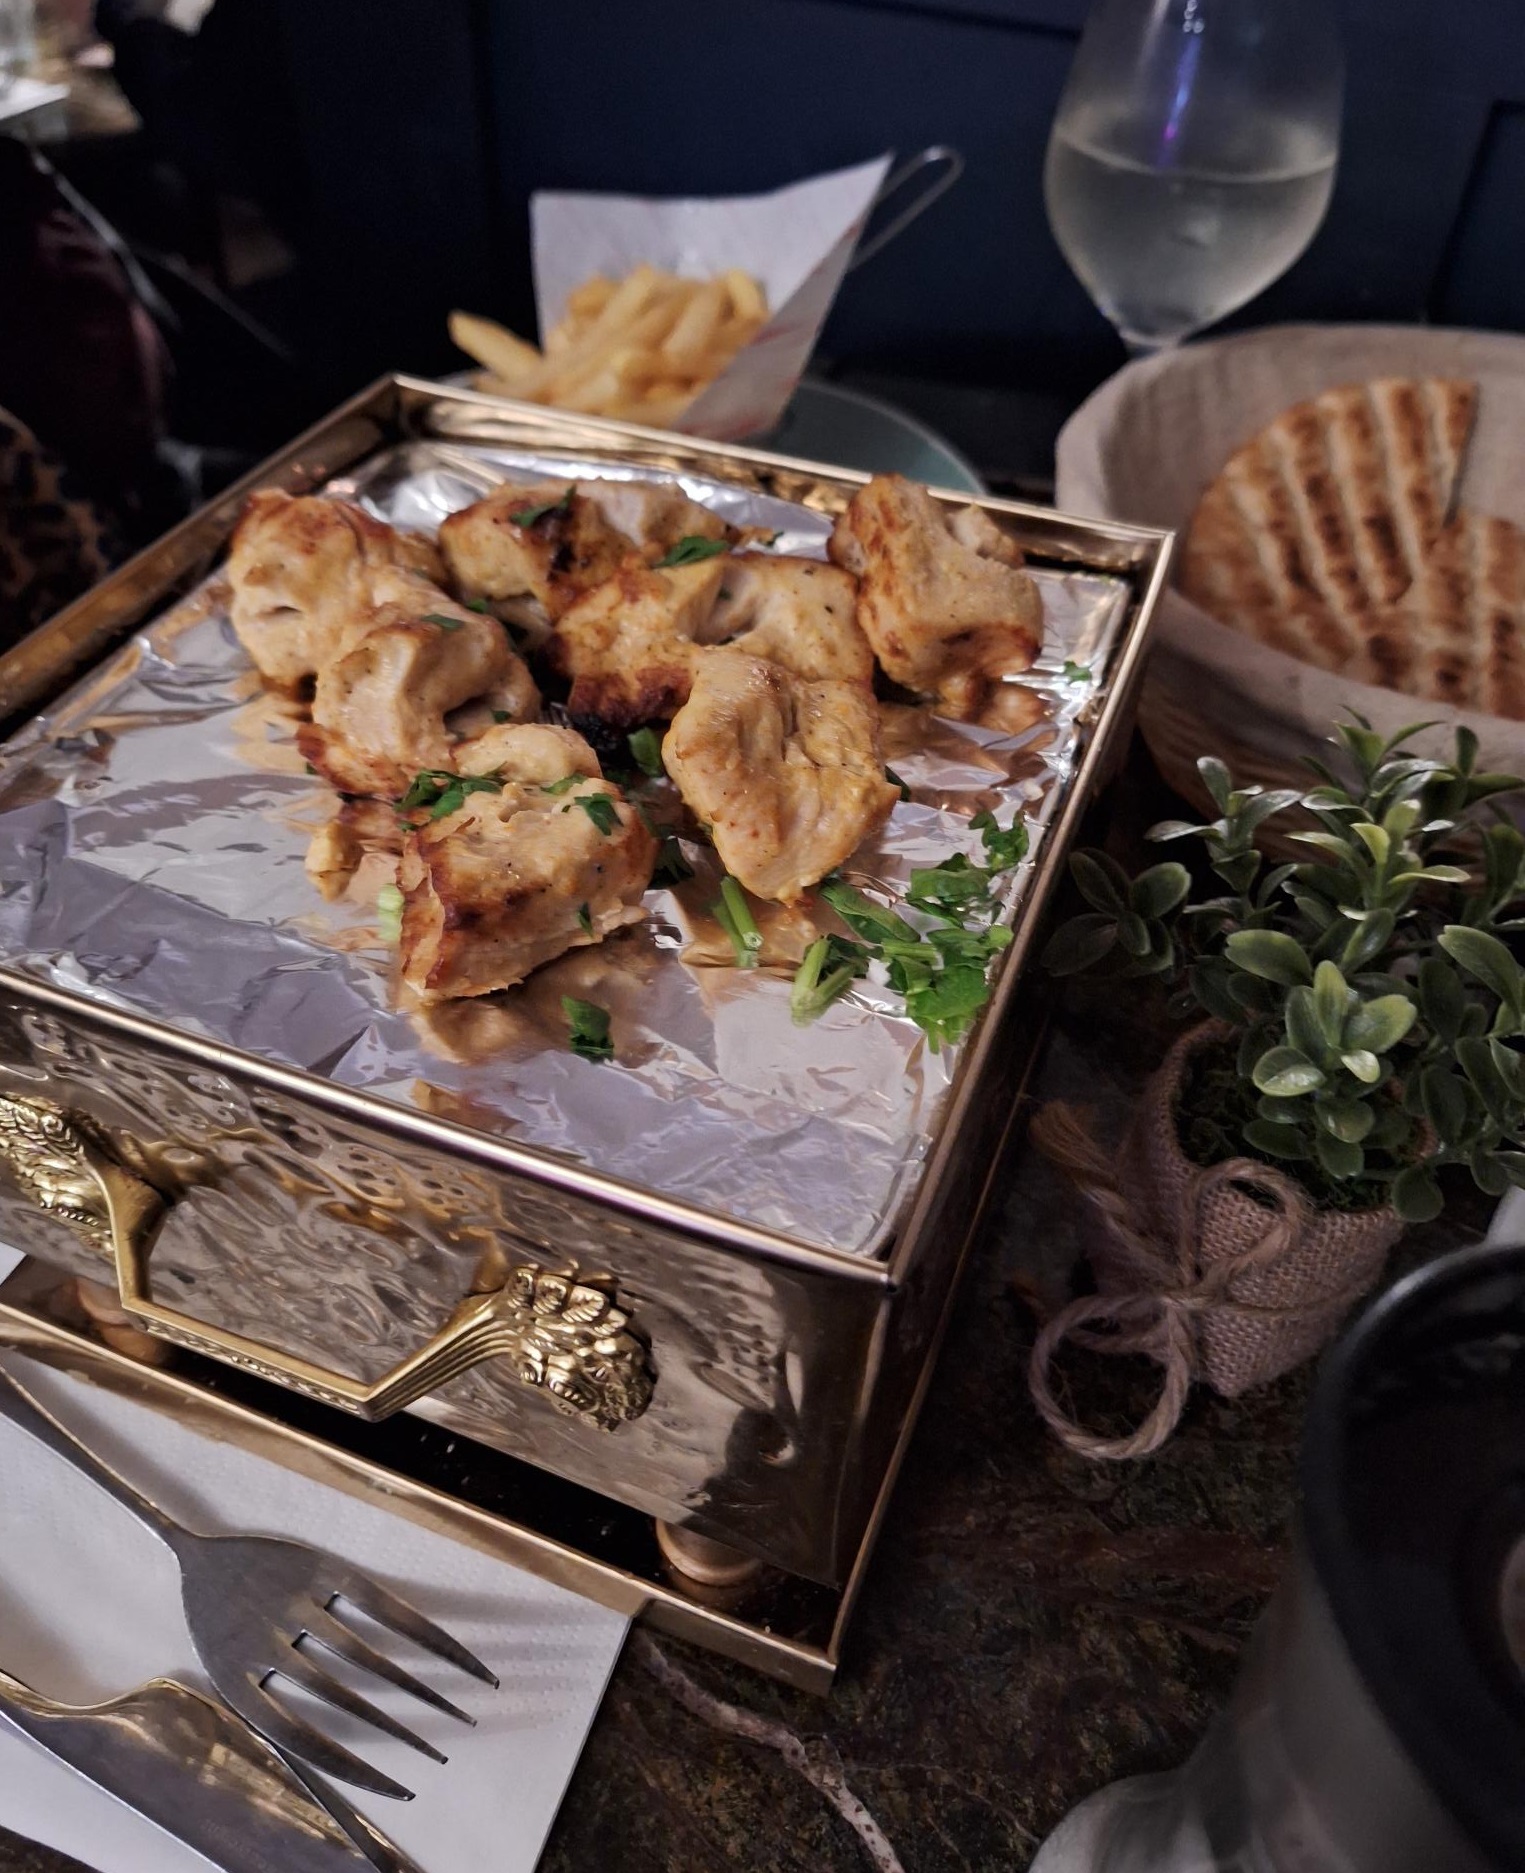 Chicken Souvlaki came served on an ornate platter